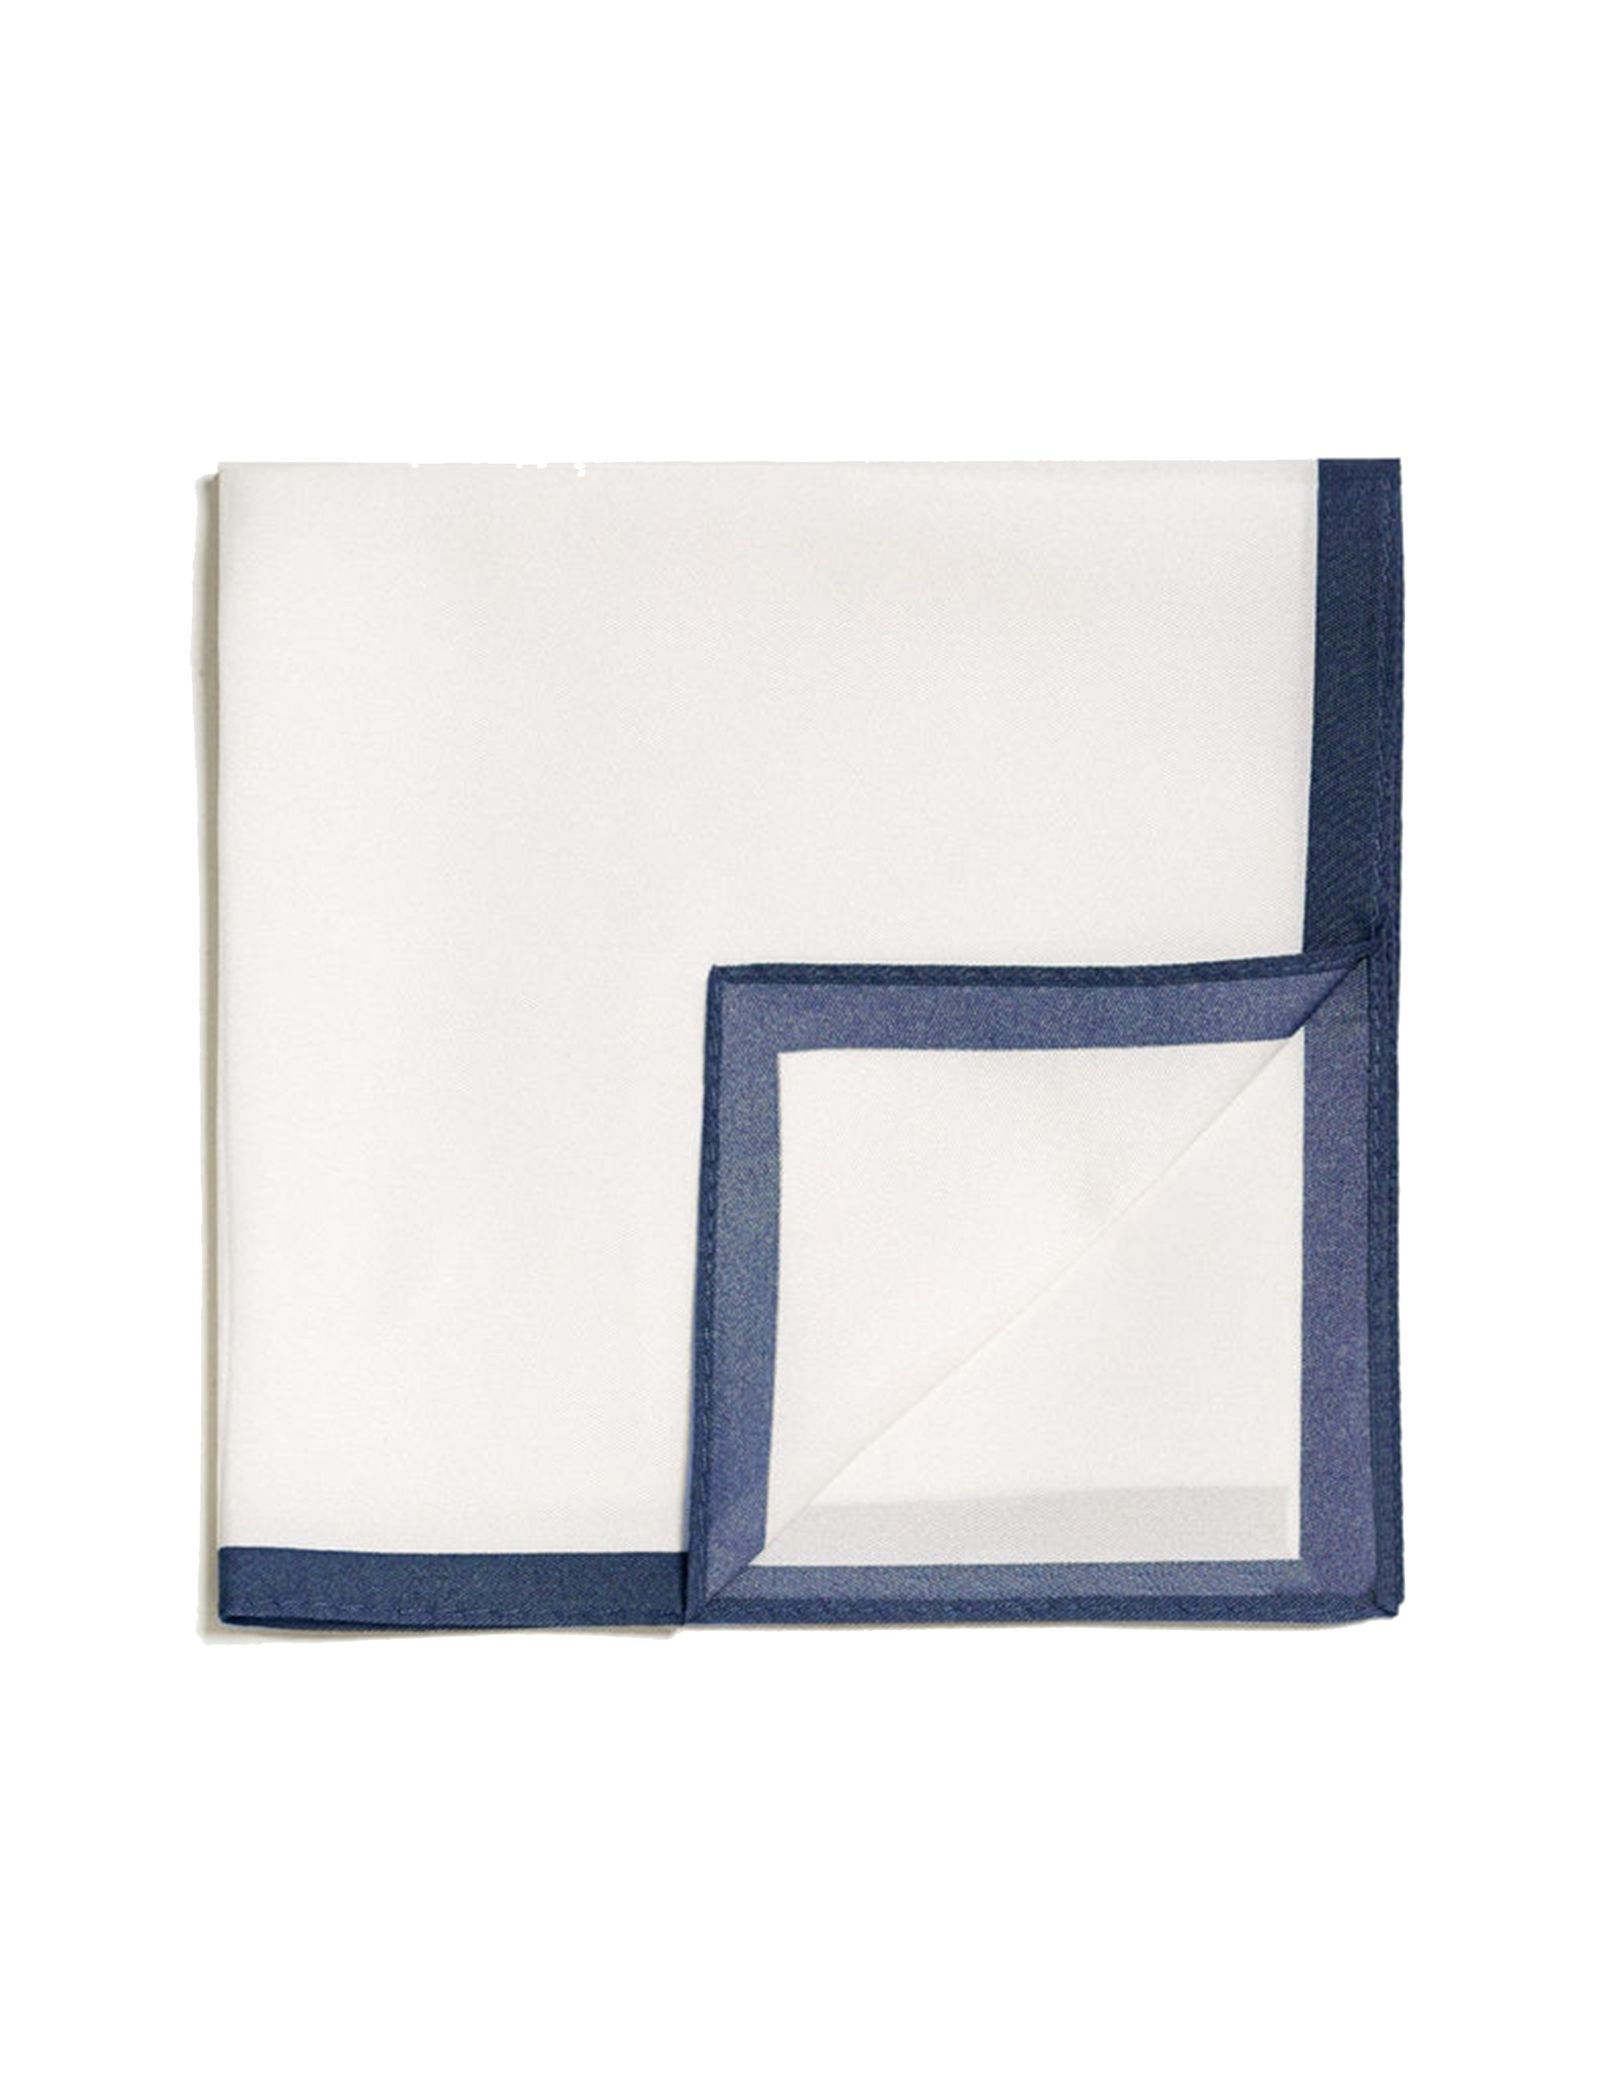 دستمال جیب ابریشم ساده مردانه - مانگو - سفيد و سرمه اي - 1